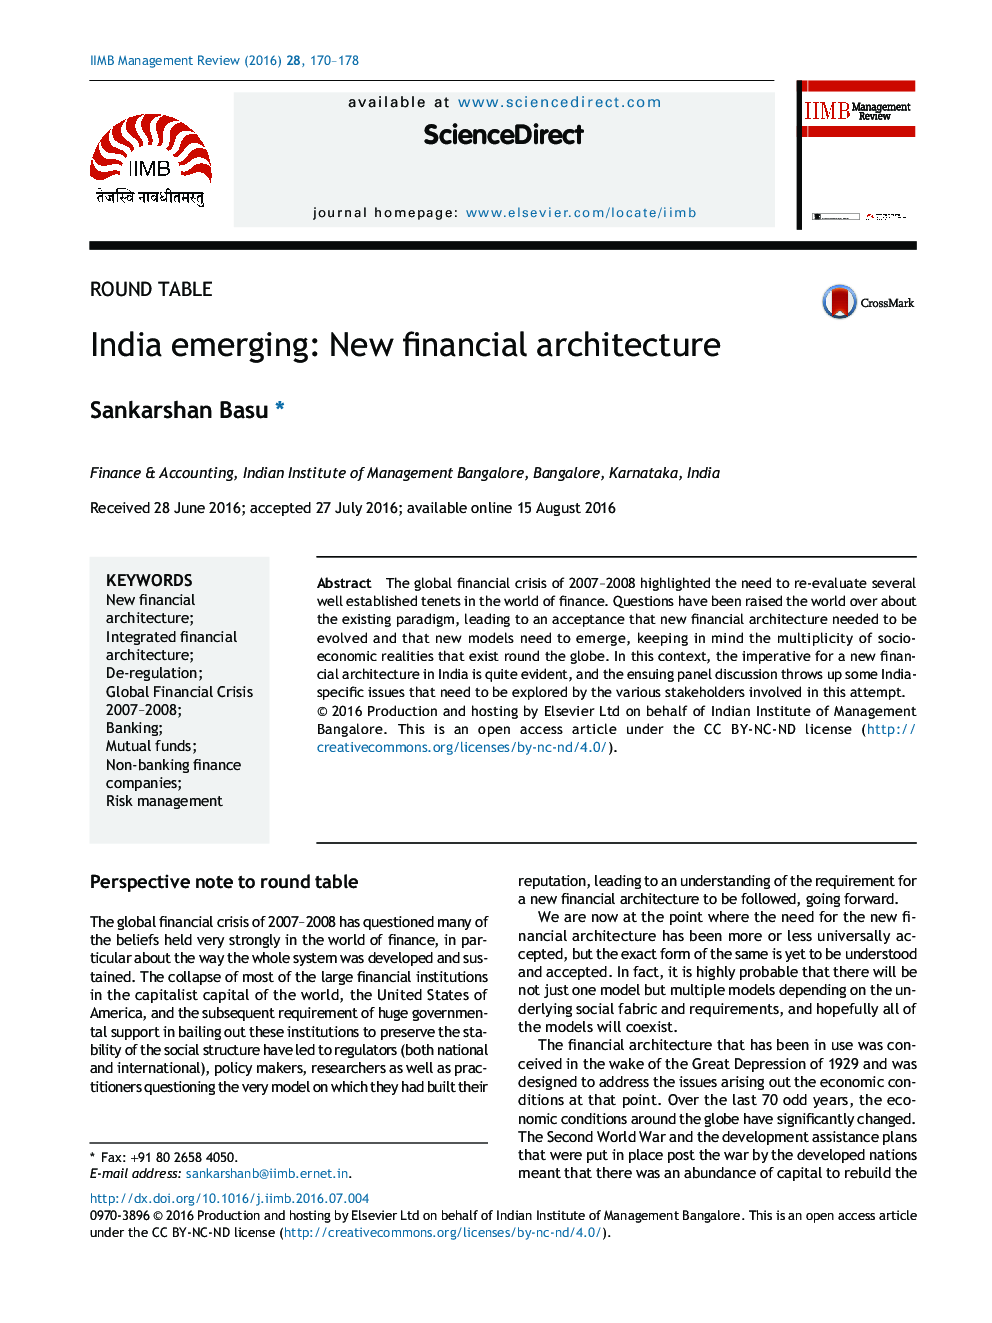 در حال ظهور هند: معماری مالی جدید 